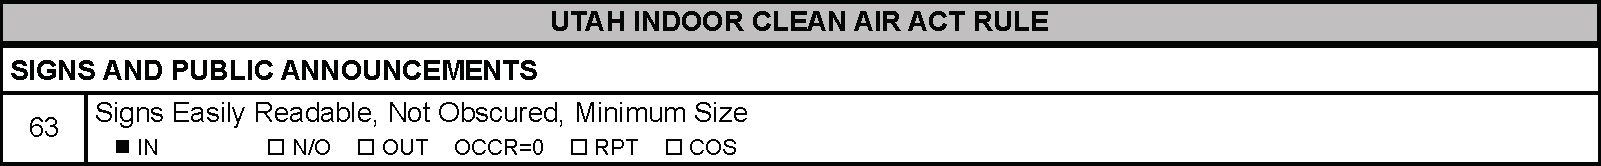 Utah Indoor Clean Air Act Rule